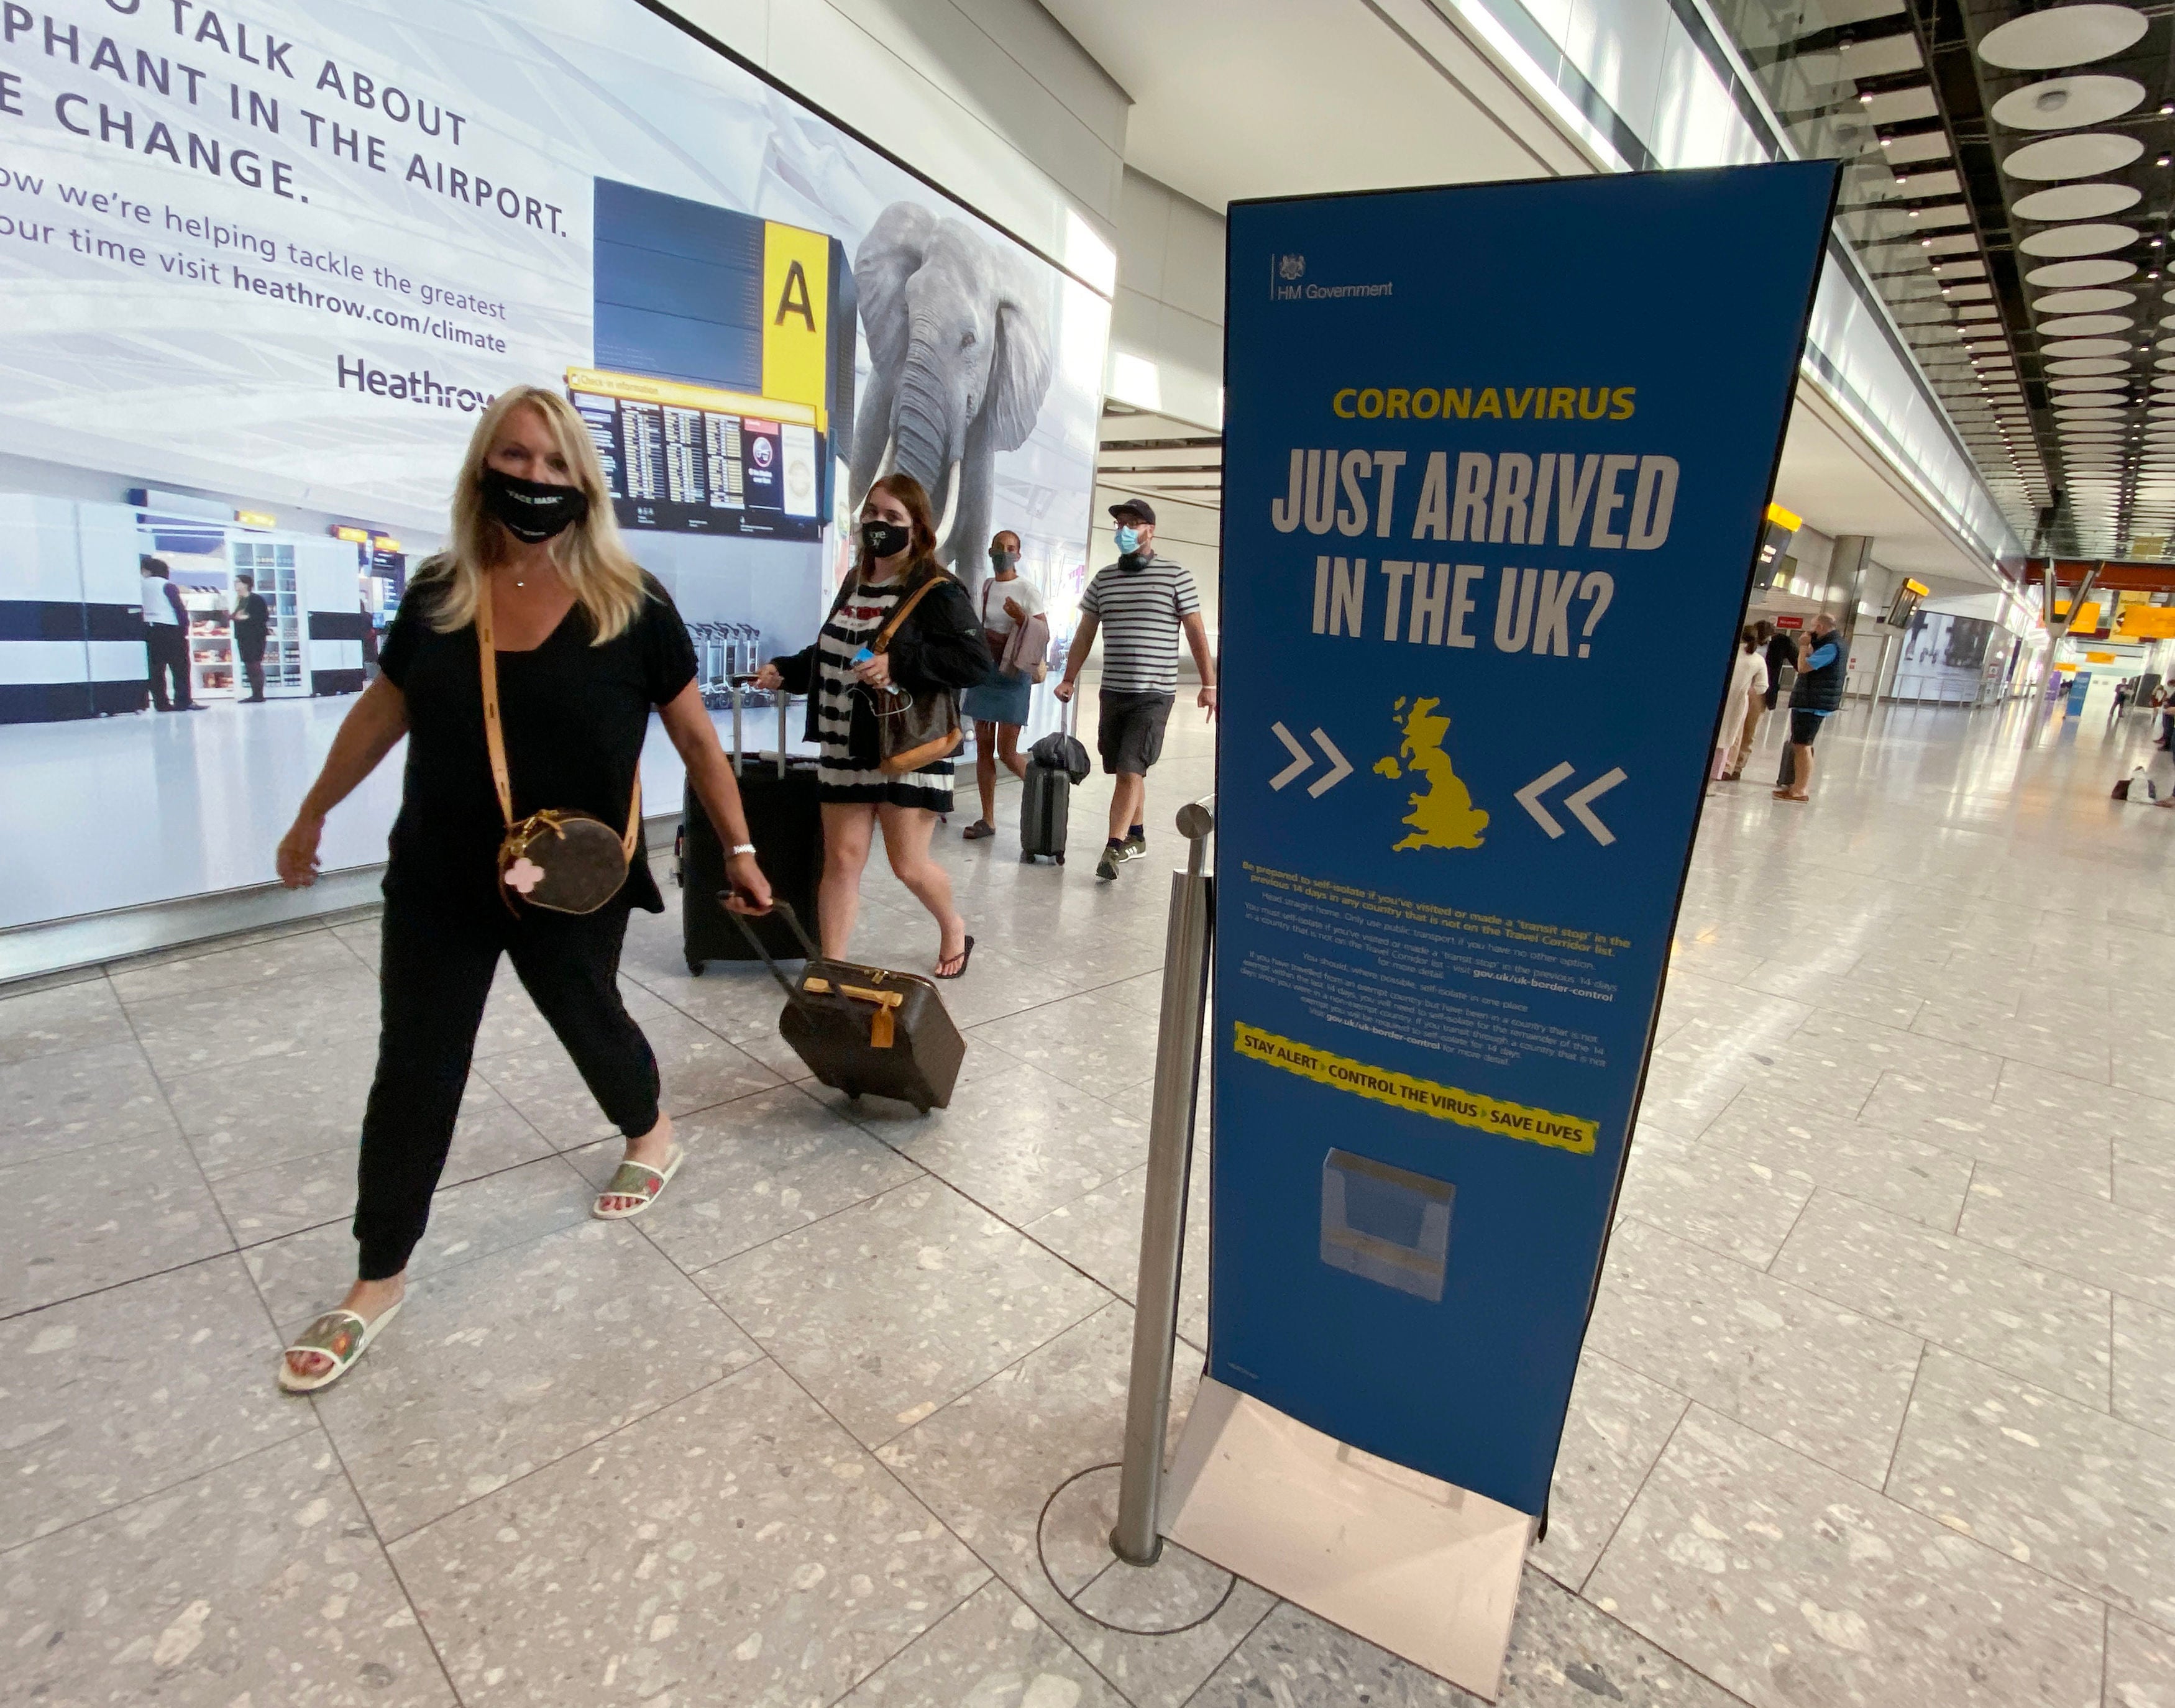 Los pasajeros llegan al aeropuerto de Heathrow desde la isla griega de Mykonos, horas antes de que entre en vigor la cuarentena de las 4 am.